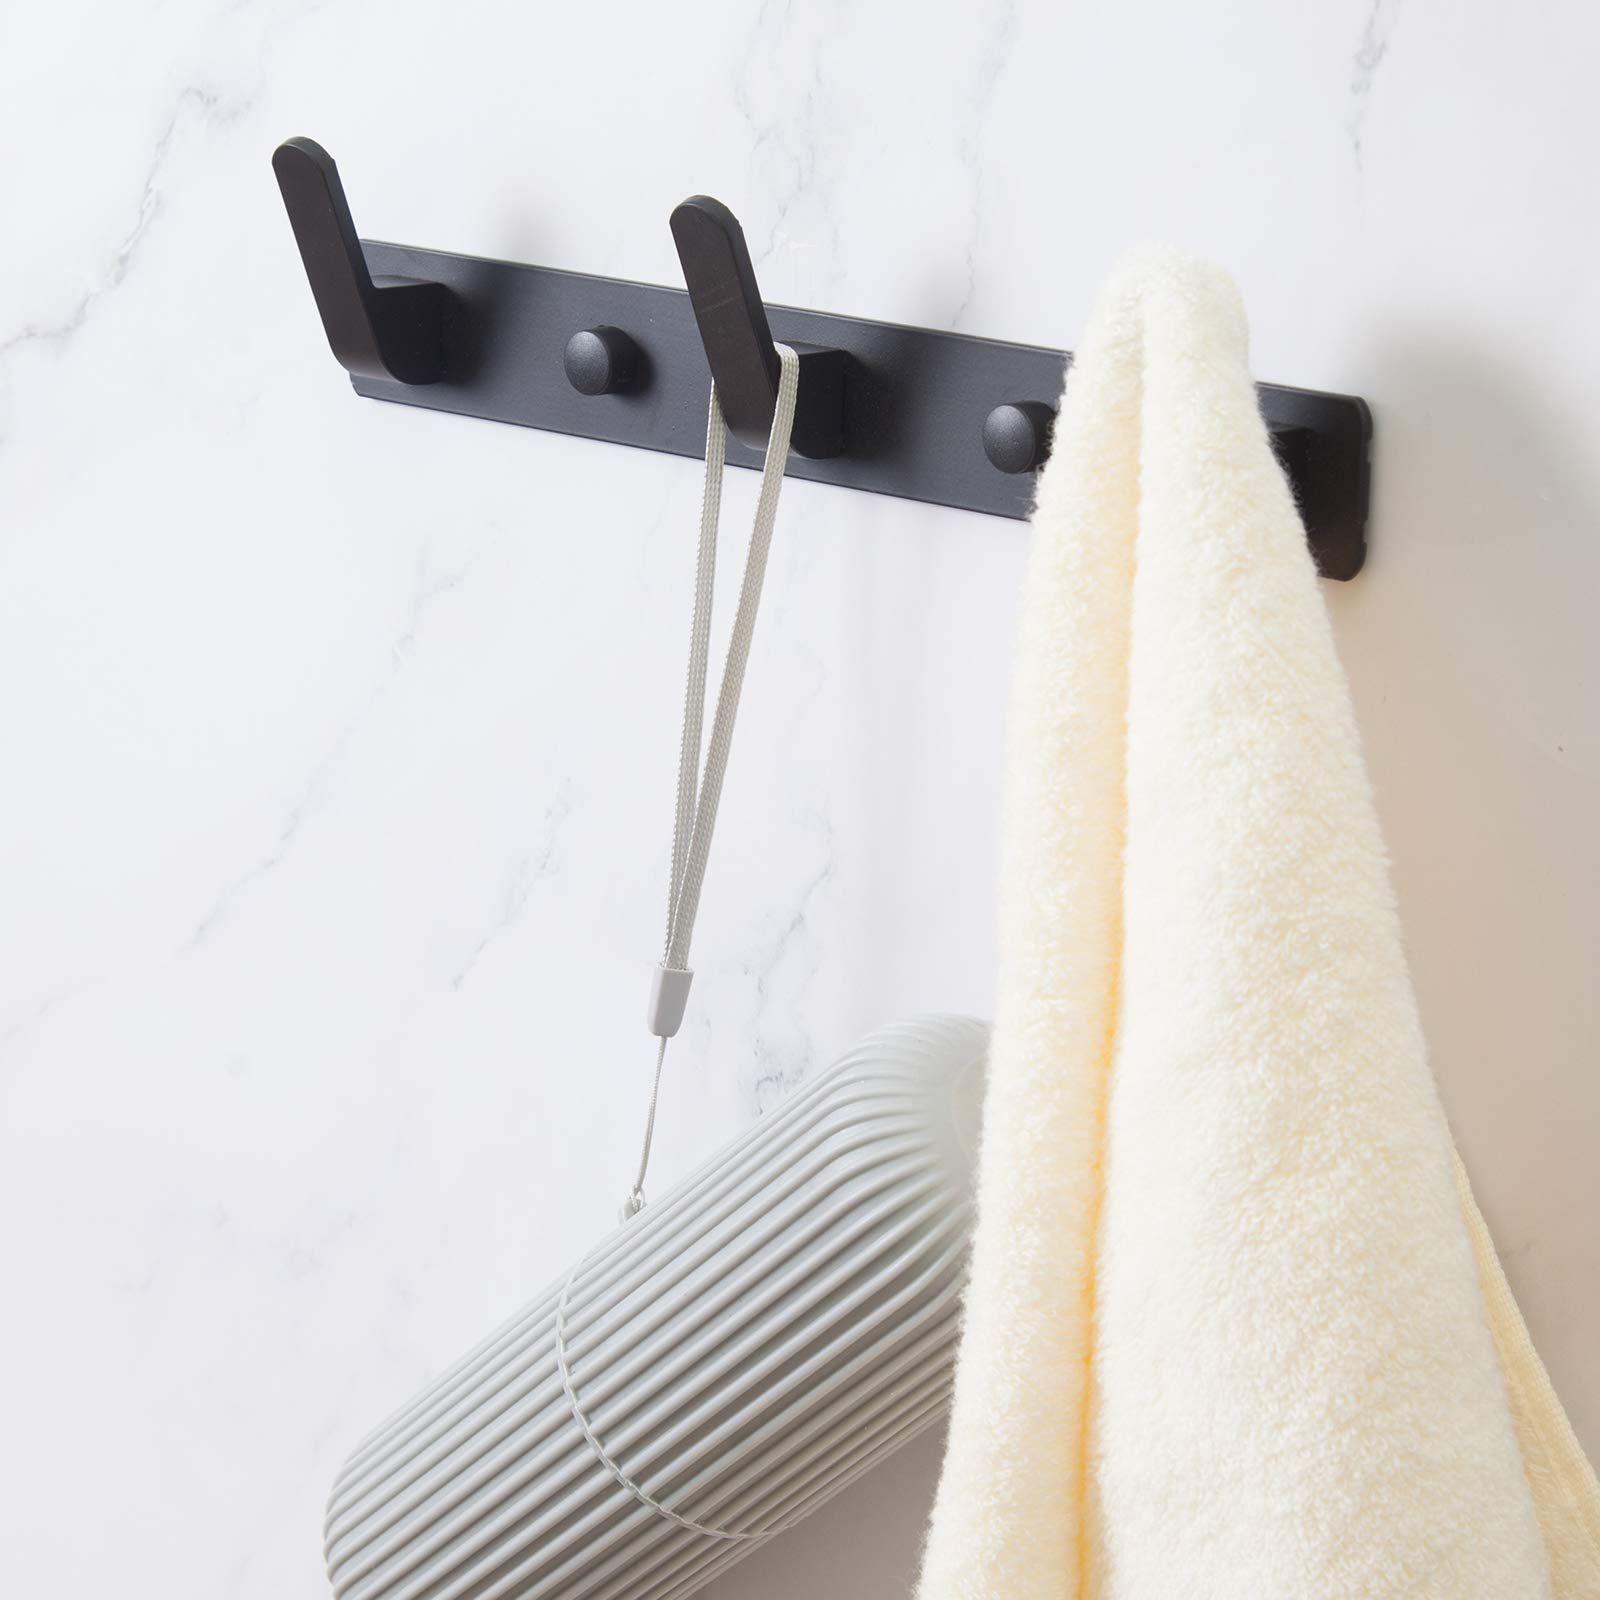 3 Hooks Matte Black Wall Bathroom Towel Hooks Mount Stainless Steel Heavy Duty Shower Wall Coat R... | Amazon (US)